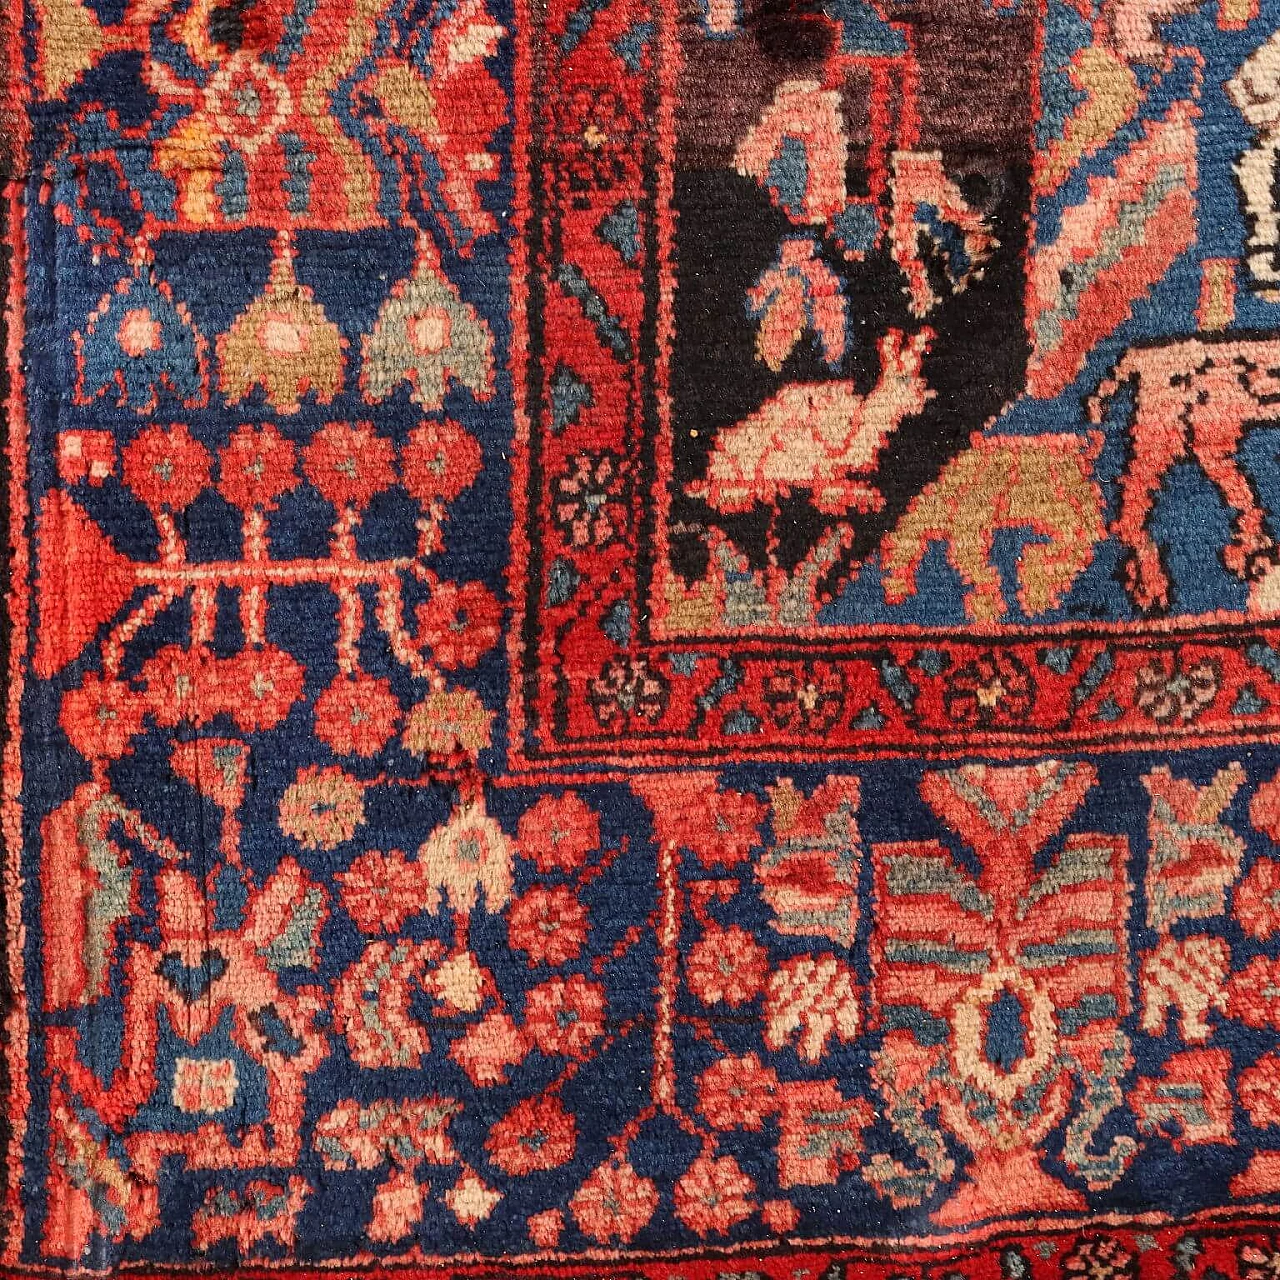 Iranian wool and cotton Malayer rug 6